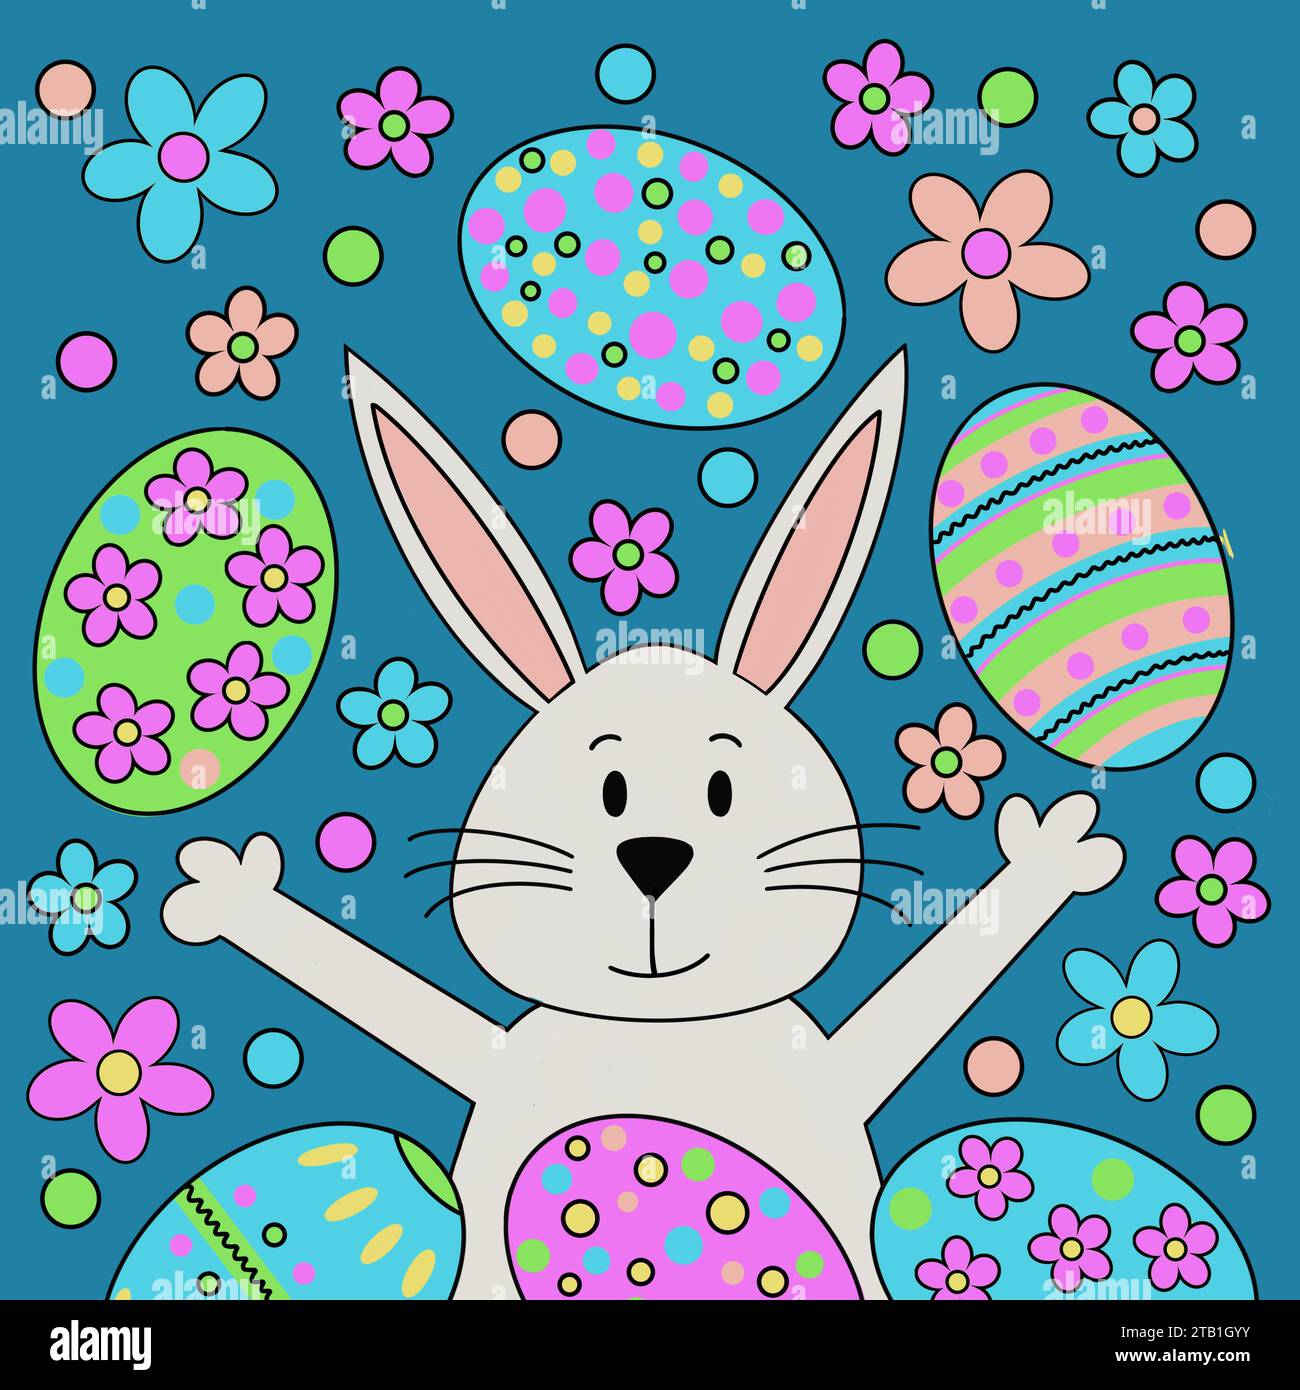 Joyeuses Pâques. Motif de Pâques avec lapin de Pâques. Lapin de Pâques de dessin animé entouré d'une explosion d'œufs de Pâques à motifs et de fleurs. Oeufs à motifs. Banque D'Images